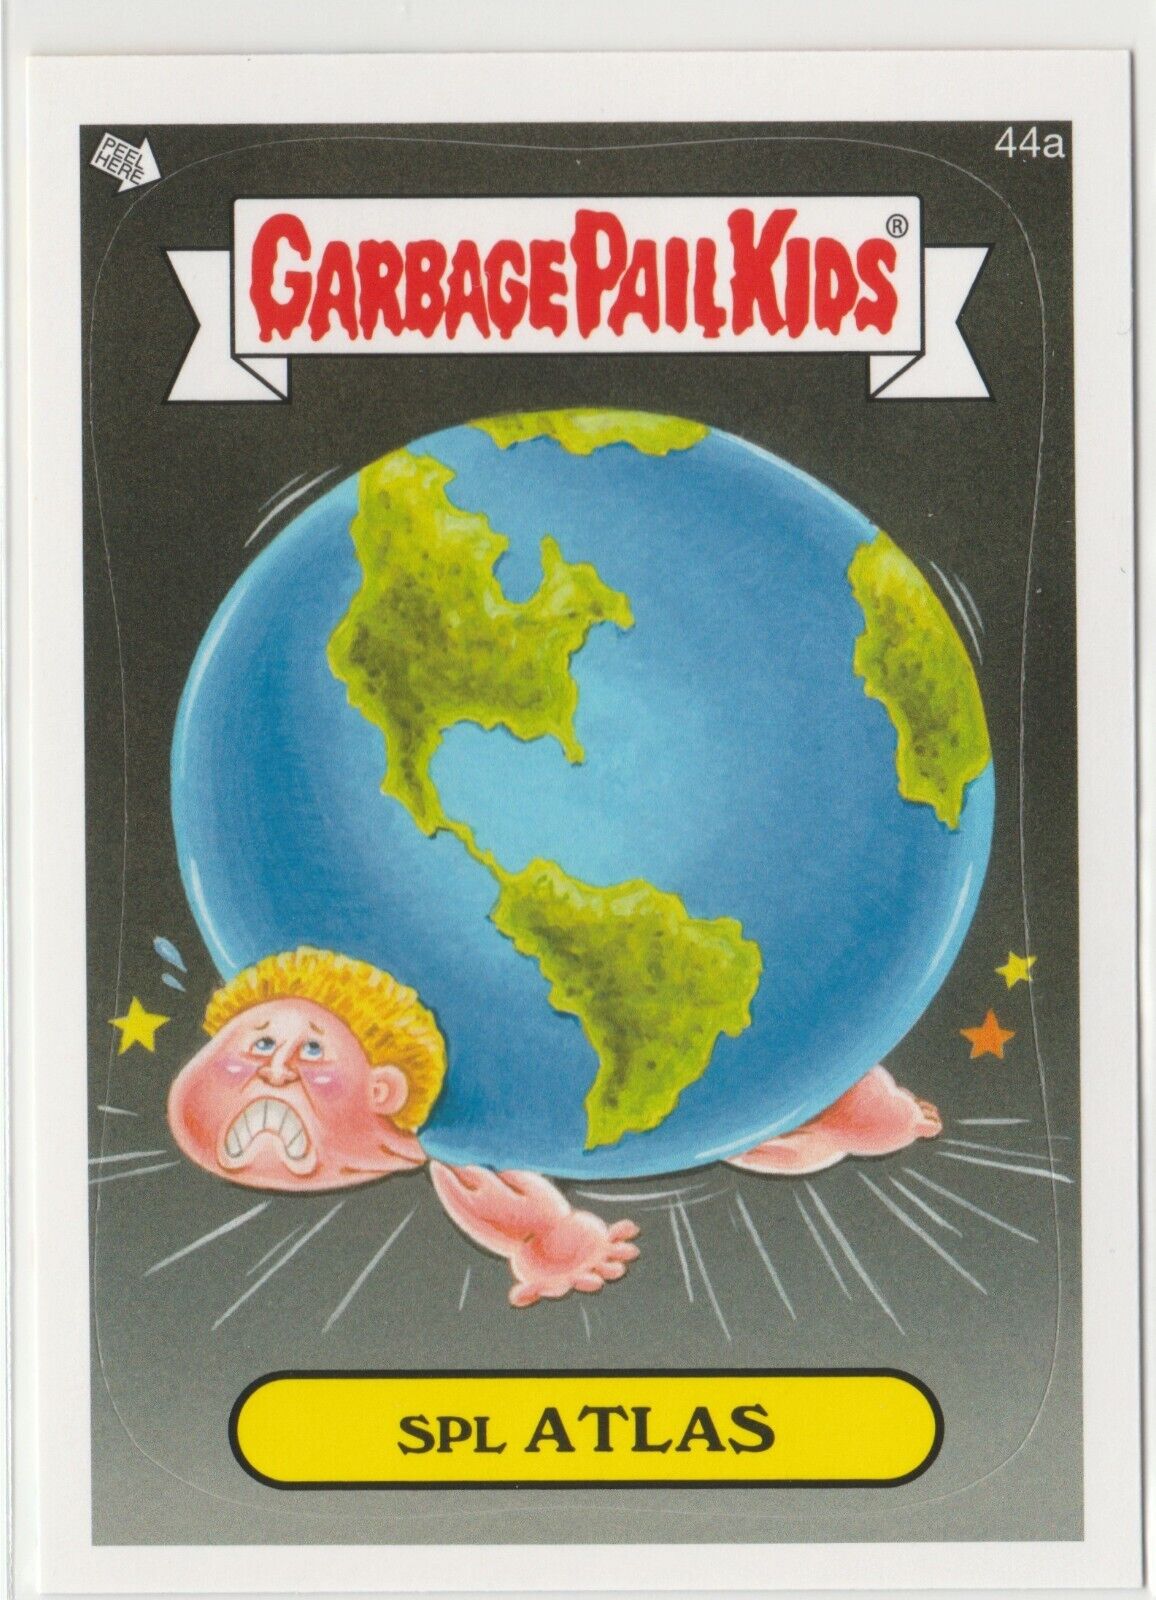 2014 Topps Garbage Pail Kids Series 1 Spl Atlas 44a GPK